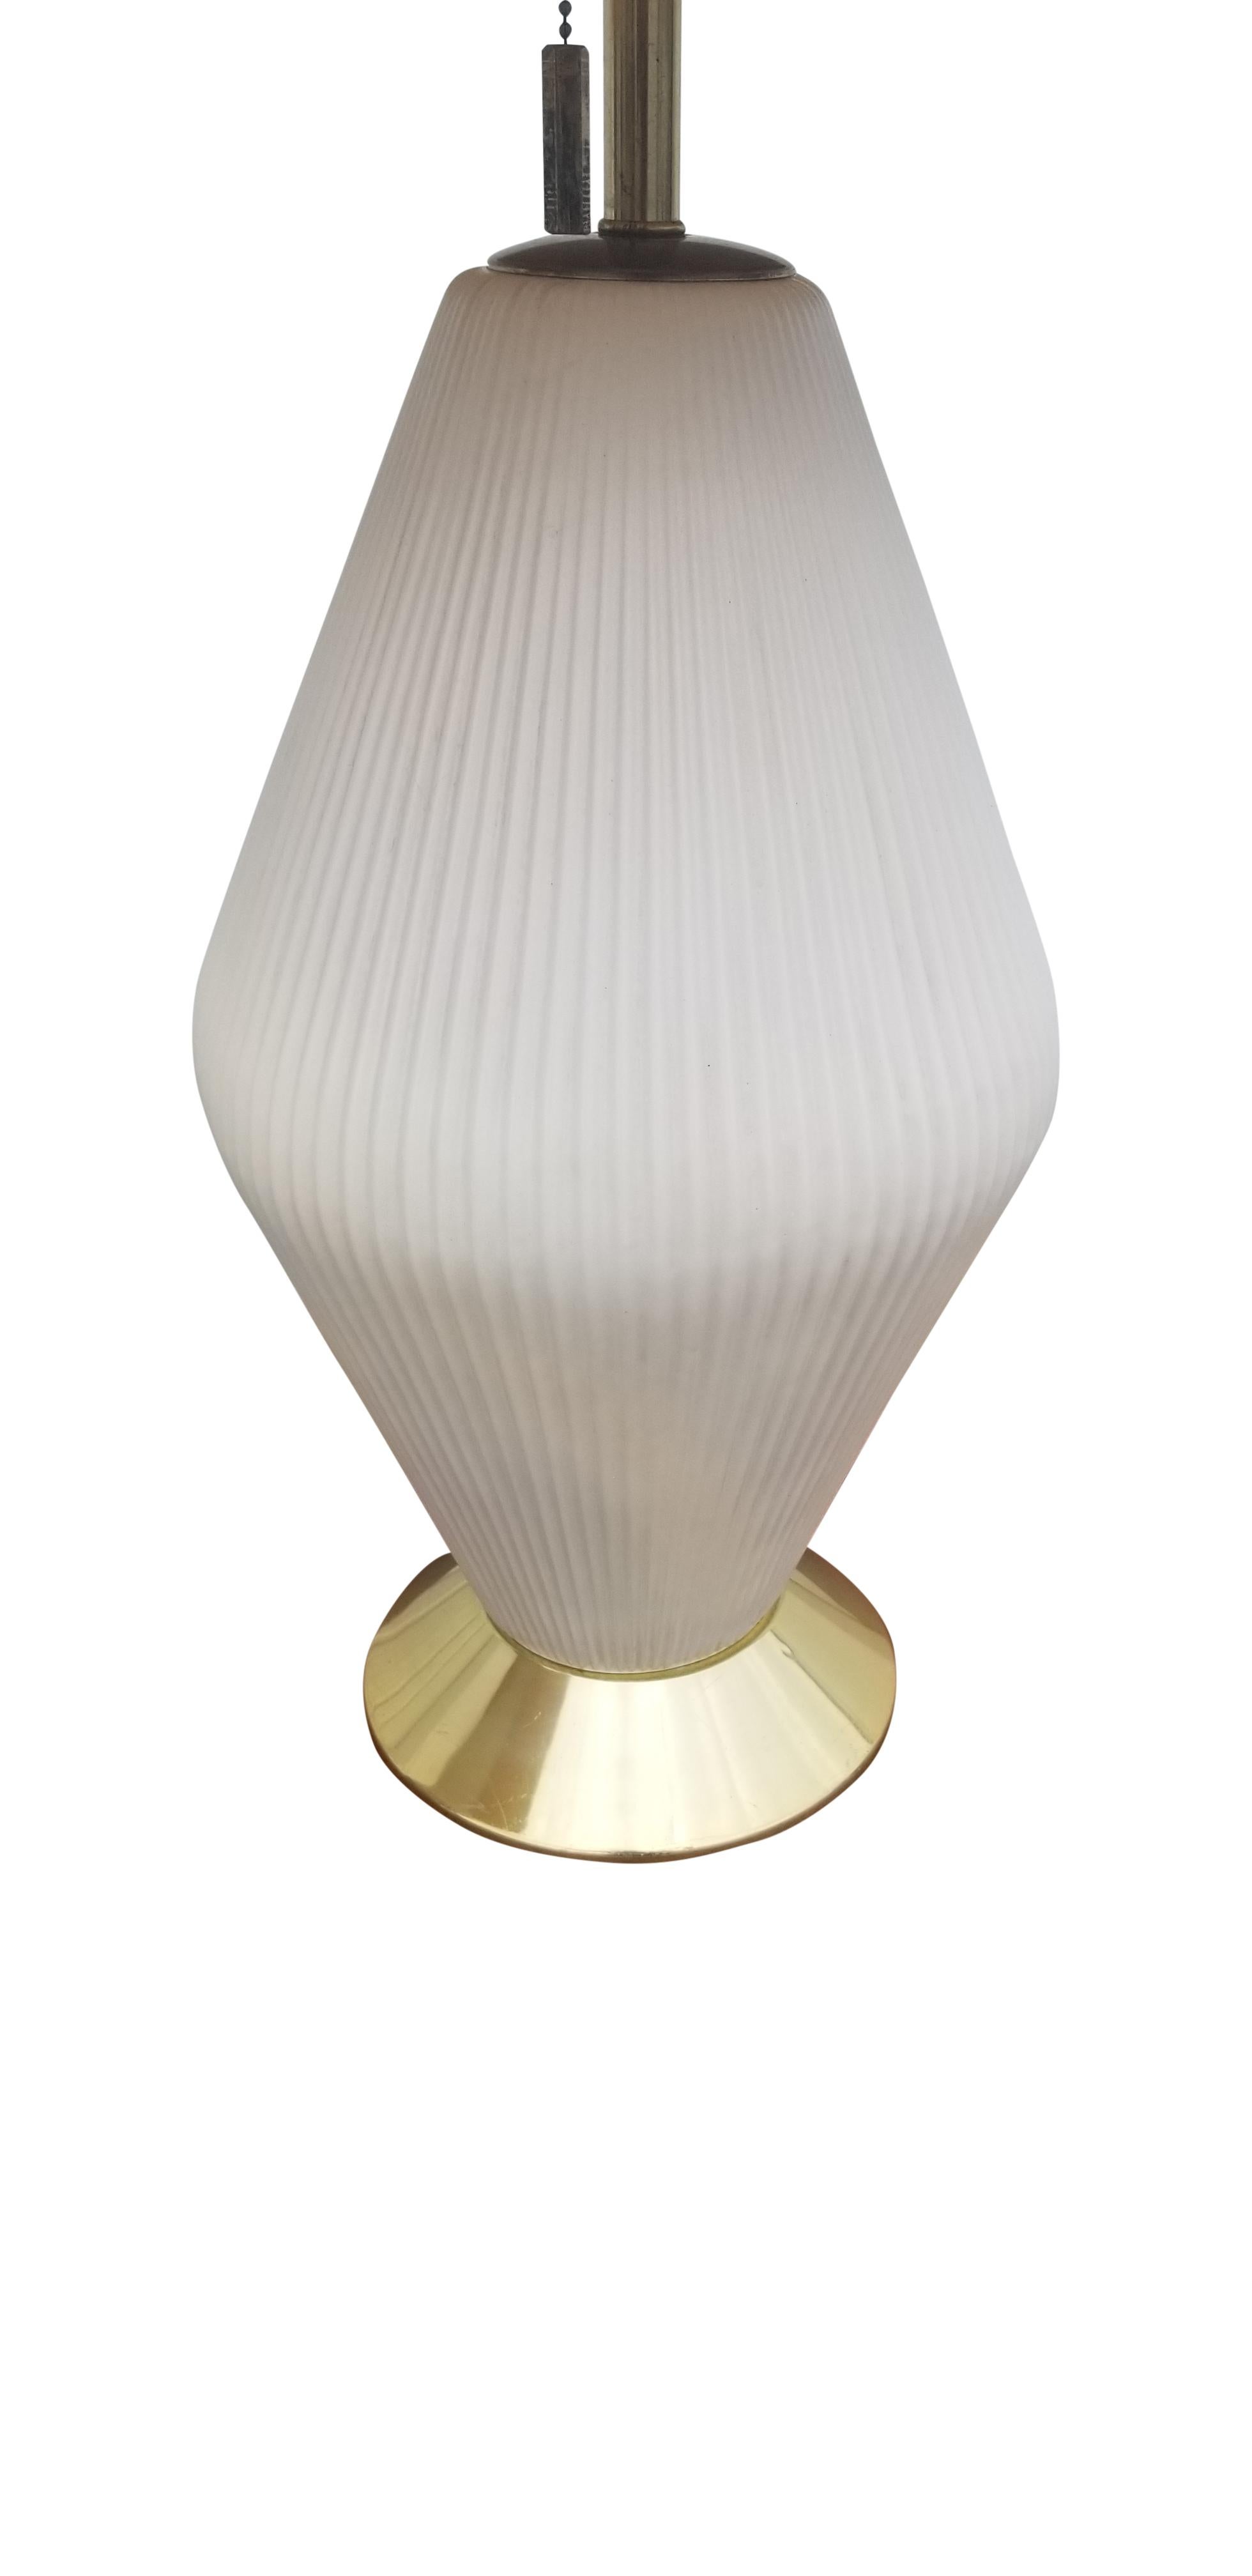 Pair of Gerald Thurston for Lightolier Porcelain Lamps 1